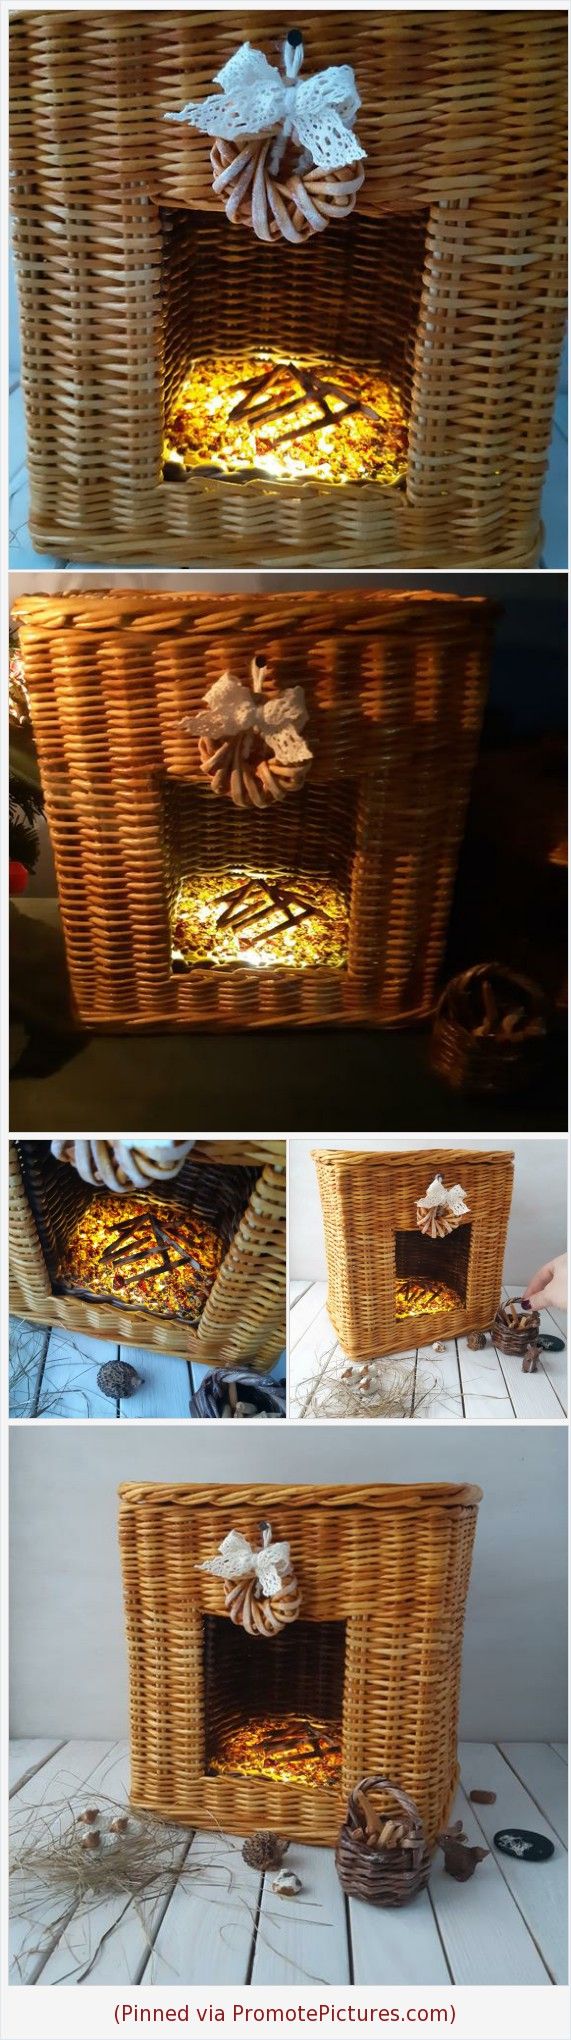 Fireplace Basket Luxury Wicker Miniature Handmade Fireplace Miniature Basket and